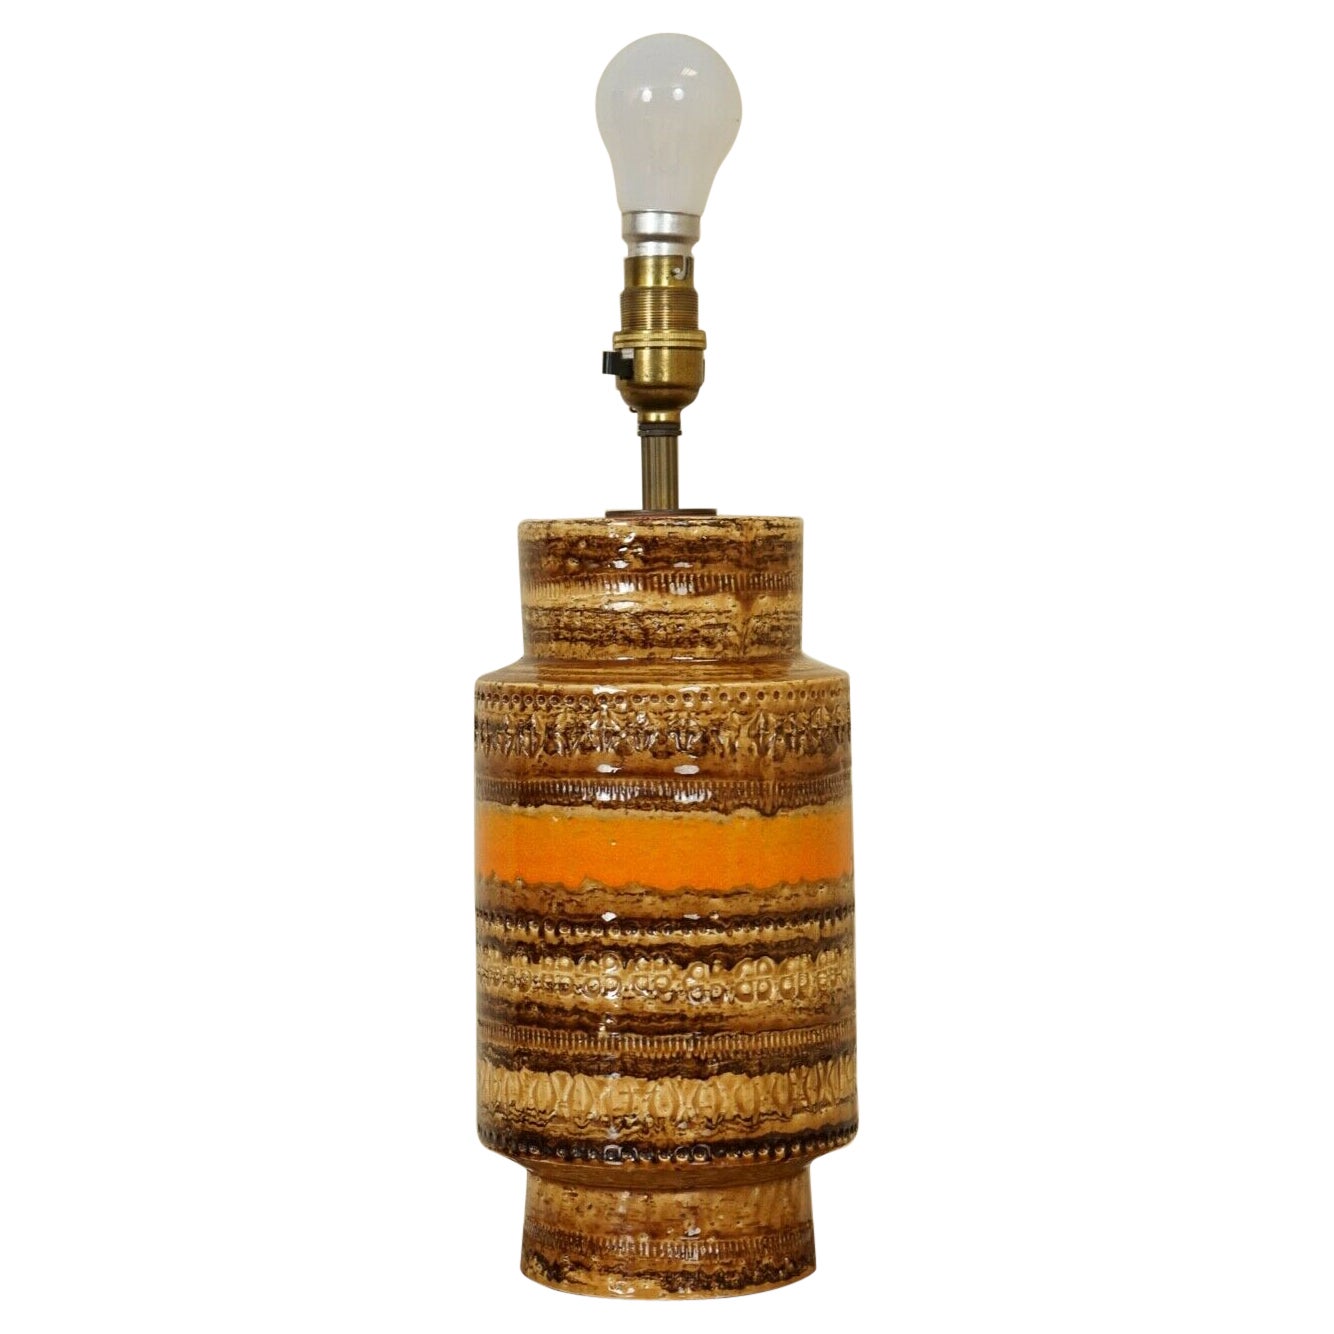 Vintage 1960's Italian Orange and Brown Ceramic Lamp by Aldo Londi for Bitossi